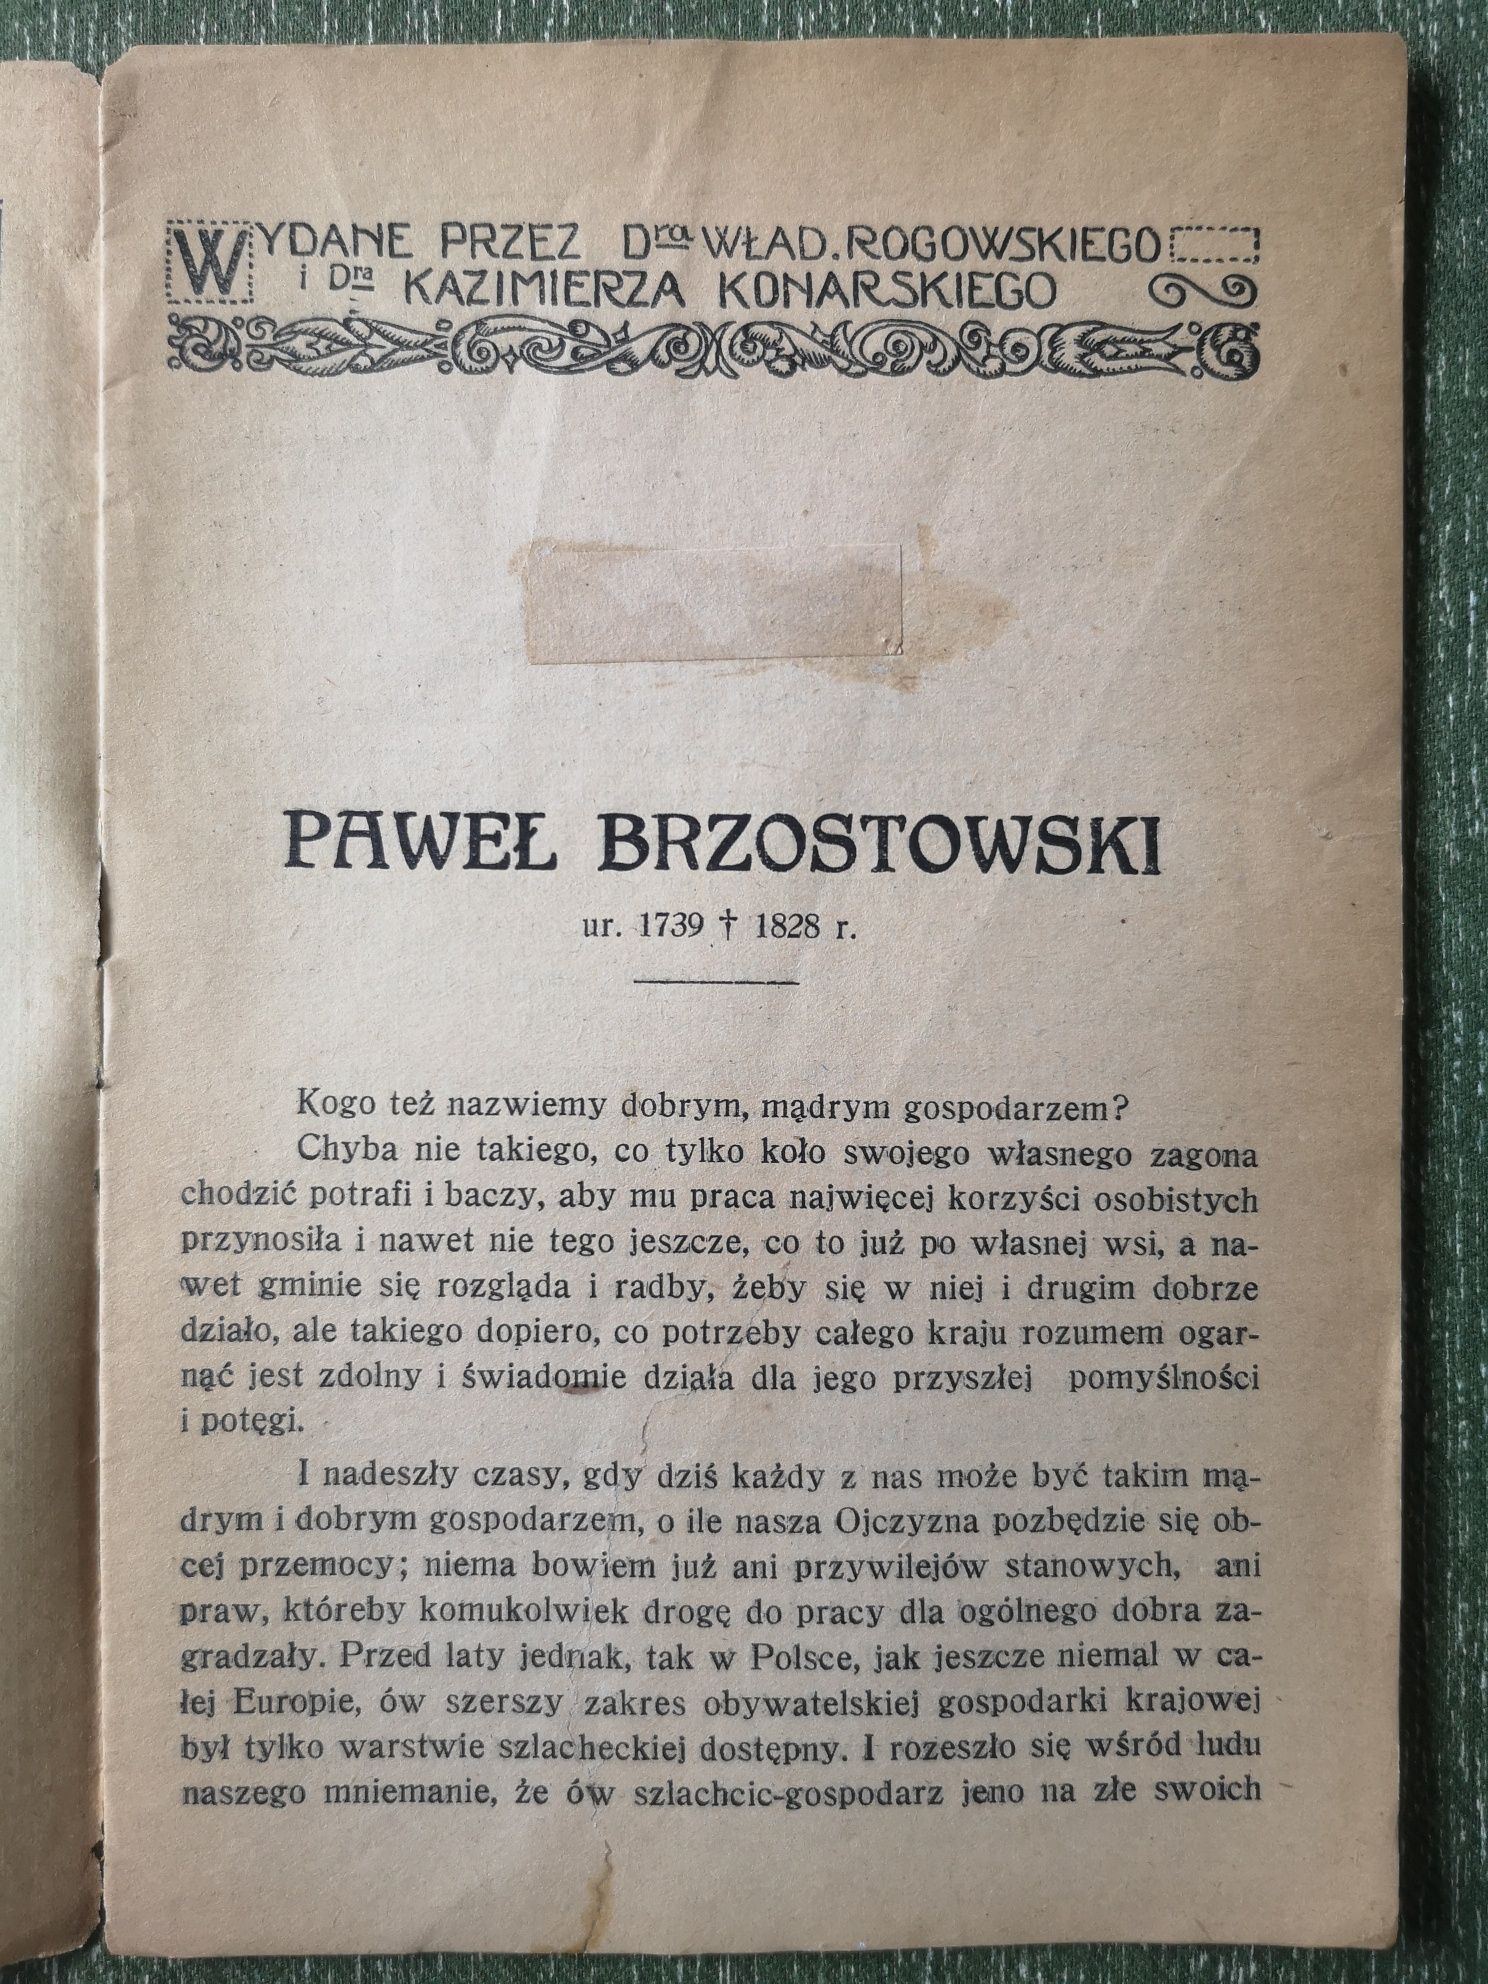 Mądrzy Gospodsrze Paweł Brzostowski  I. W. Kosmowska